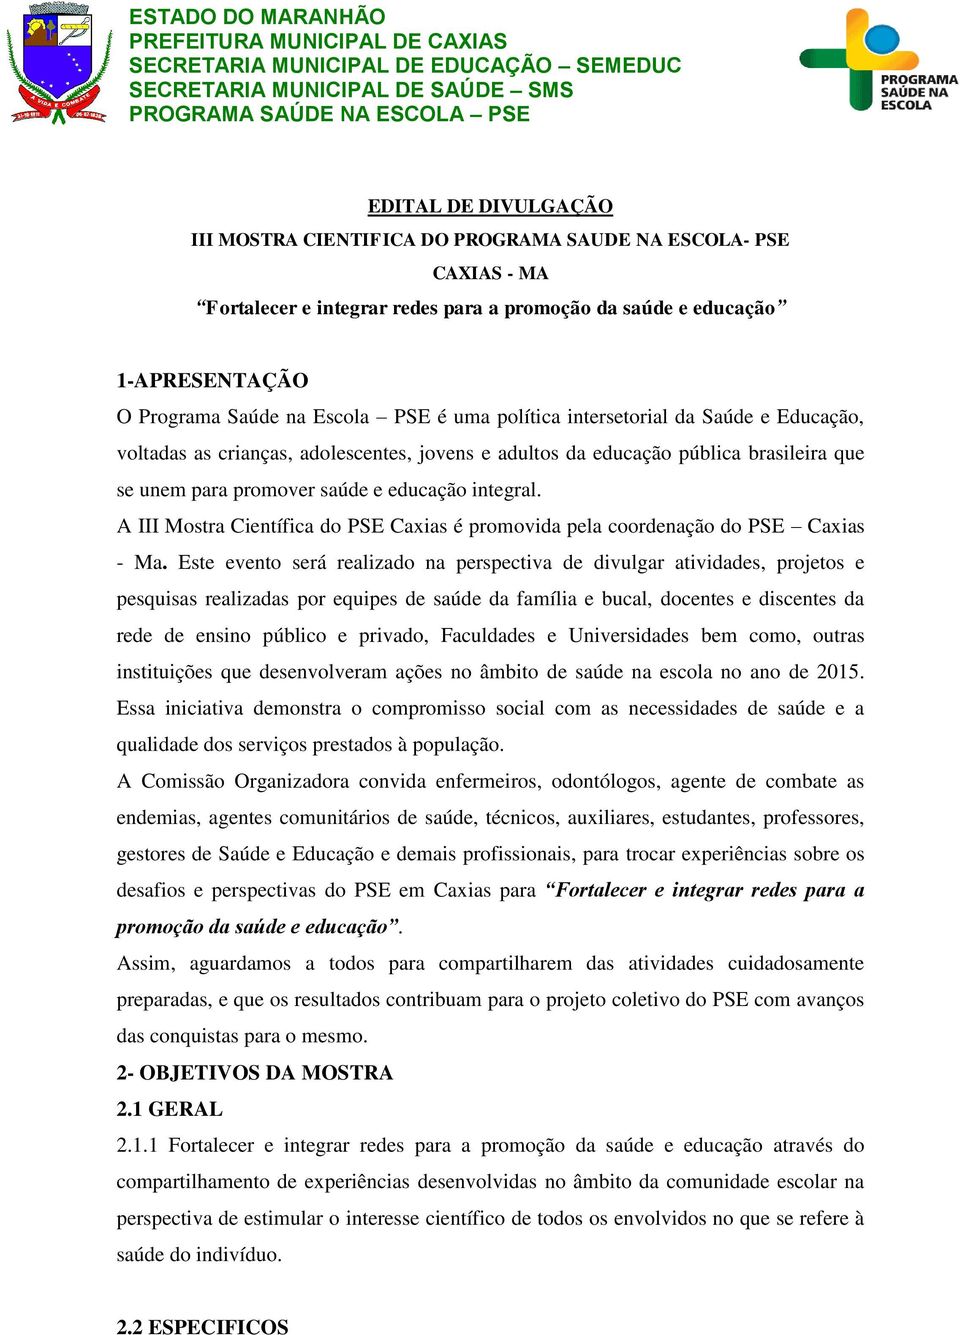 A III Mostra Científica do PSE Caxias é promovida pela coordenação do PSE Caxias - Ma.